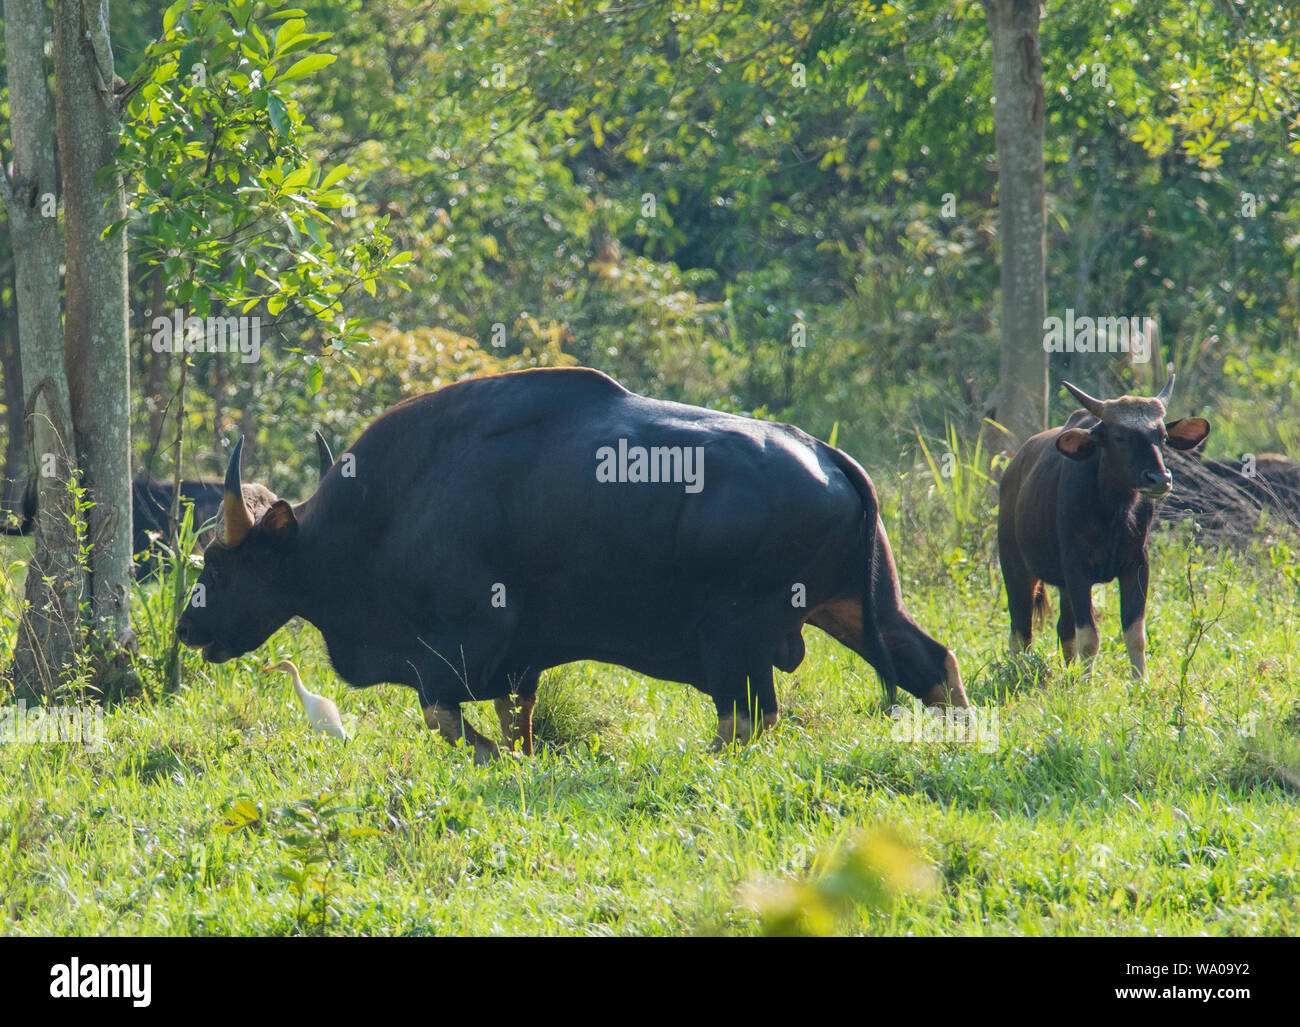 Wild Gaur or Indian bison, Bos gaurus at Kui Buri NP Thailand Stock Photo